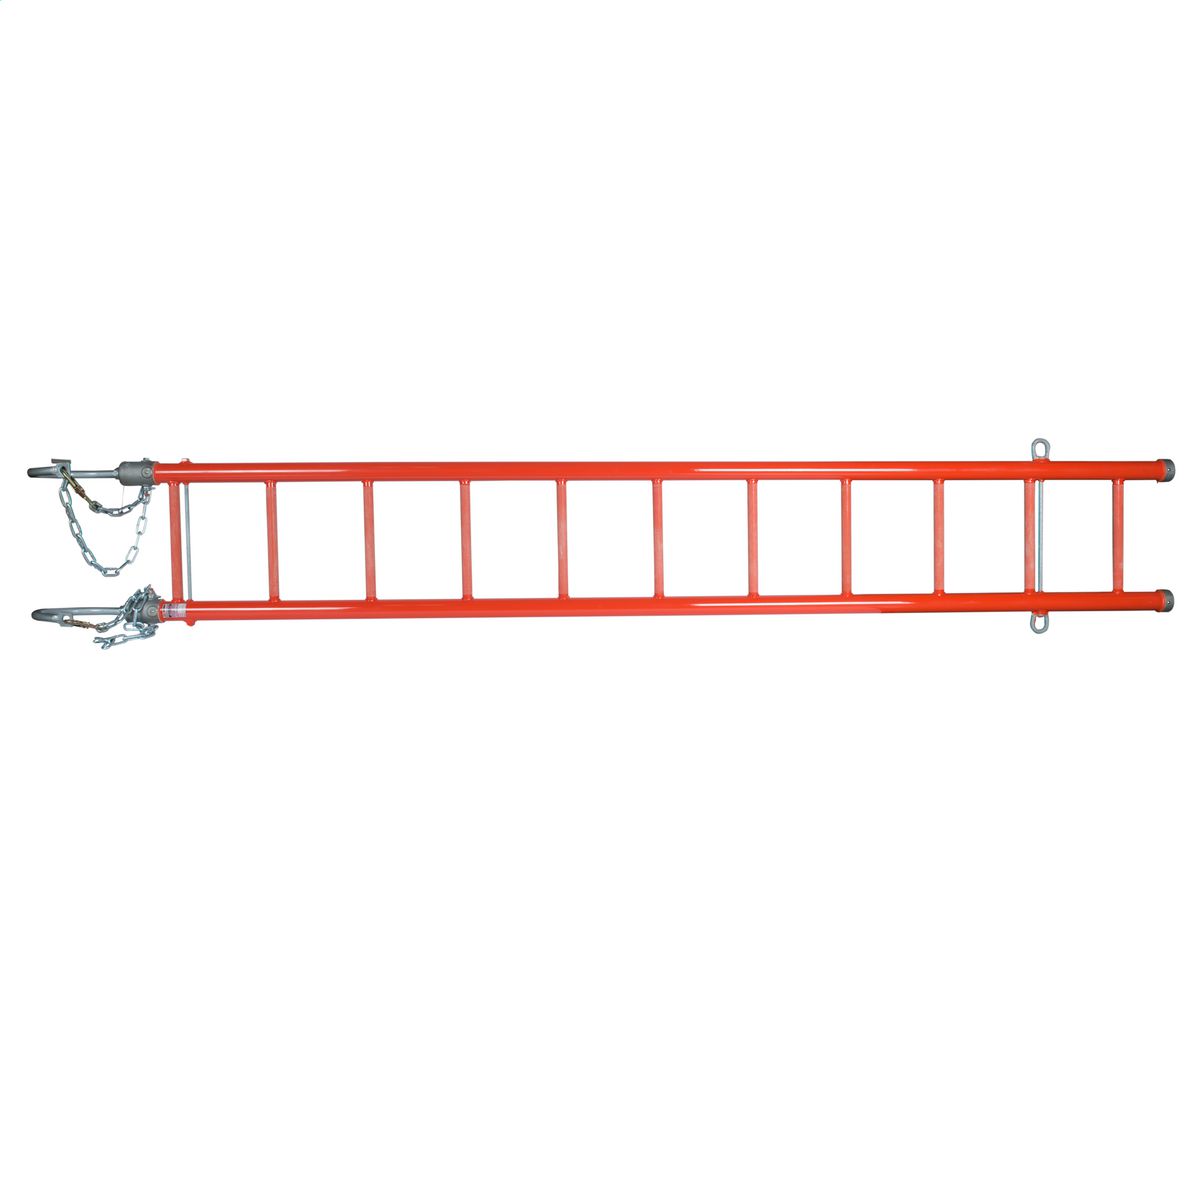 Epoxiglas Heavy Duty Swivel Hook Ladder W/8 Hooks, 16